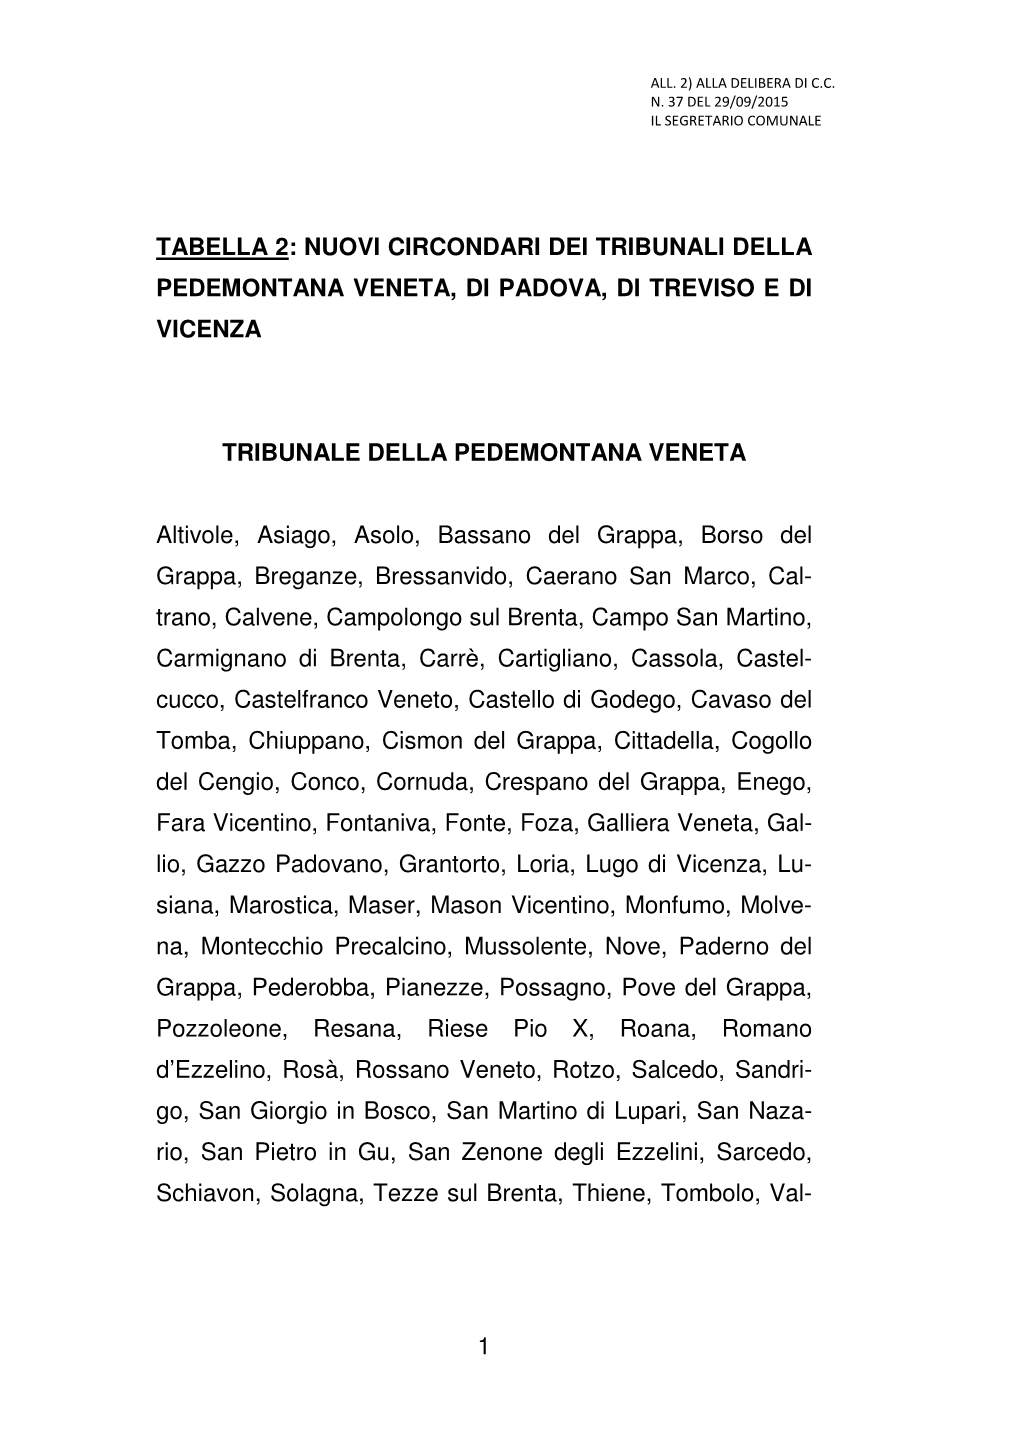 Nuovi Circondari Dei Tribunali Della Pedemontana Veneta, Di Padova, Di Treviso E Di Vicenza